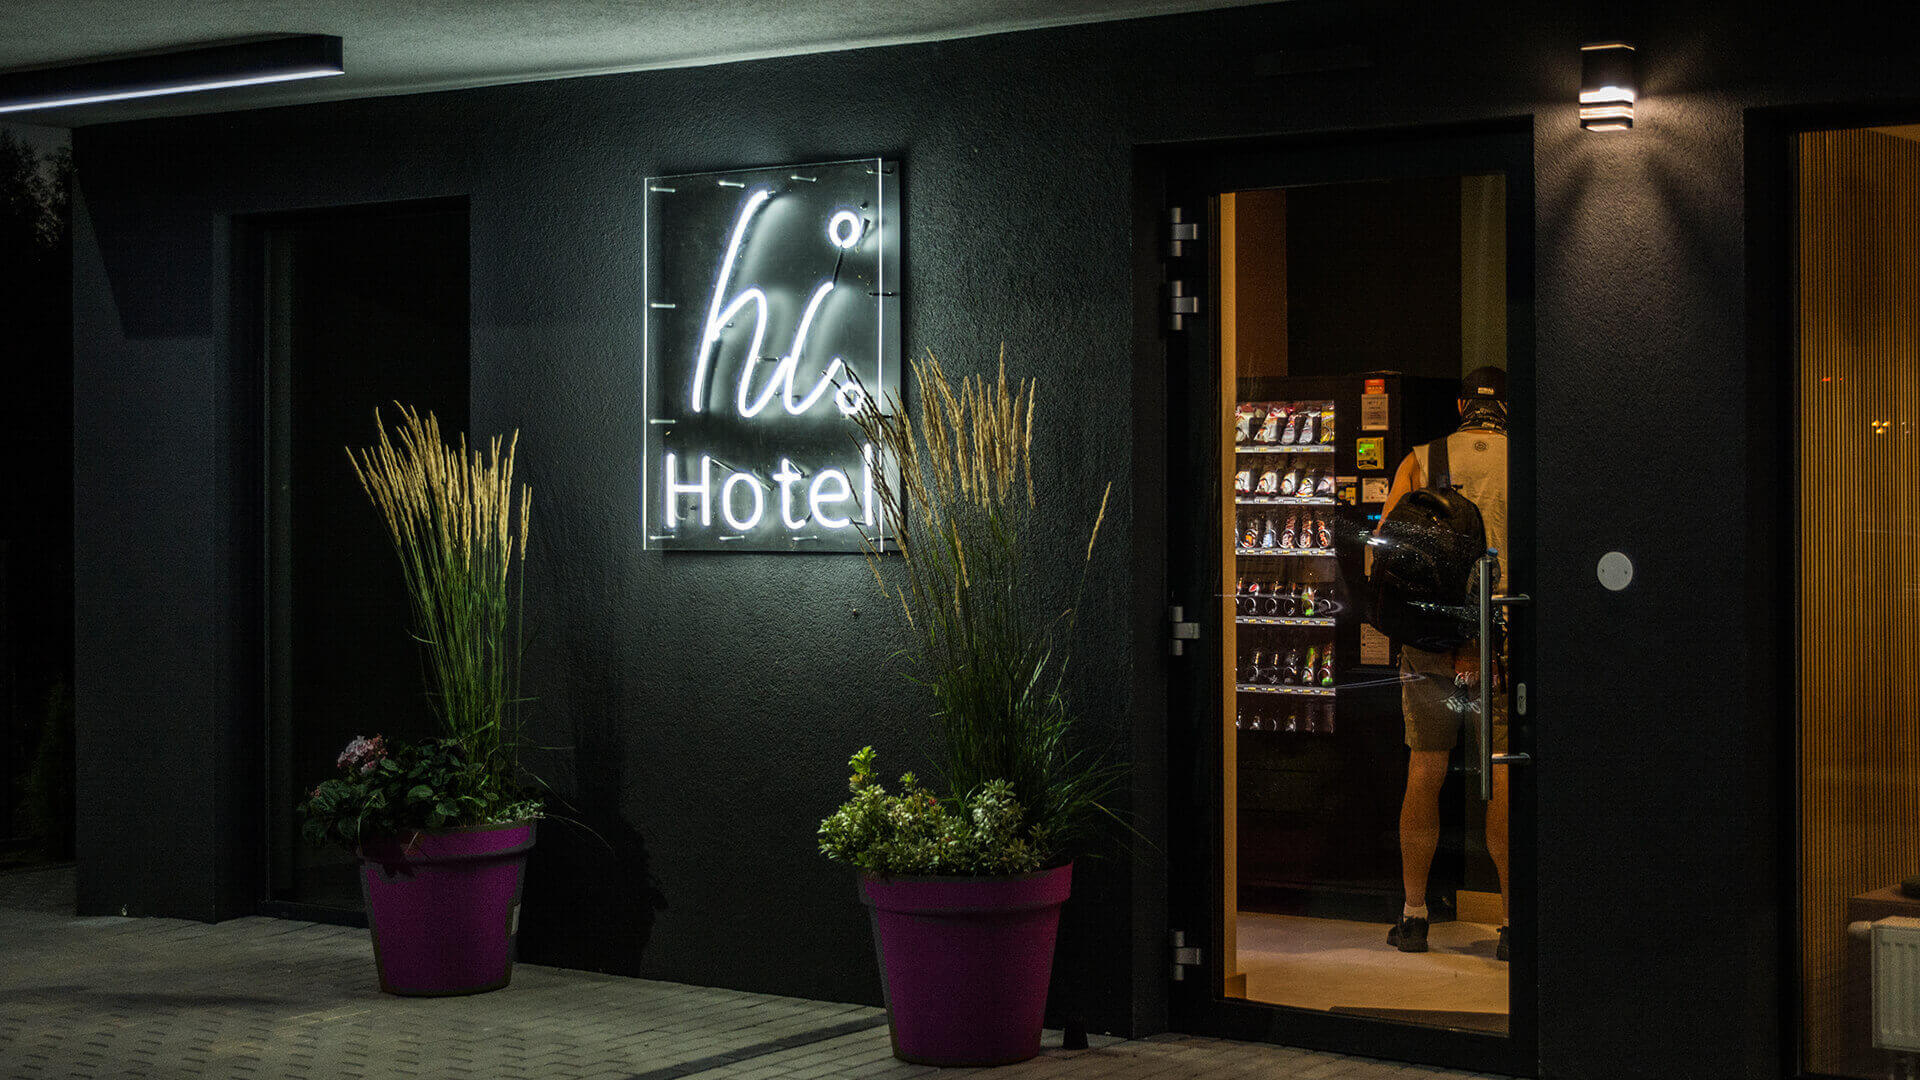 Hallo Hotel HiHotel - hi-hotel-an-der-Wand-an-der-Hinterwand-an-unter-dem-Licht-an-dem-Eingang-an-der-Höhe-an-den-Linien-an-der-Farbe-weißes-Logo-an-der-Firma-an-dem-Beton-gdansk-lotnisko (48)